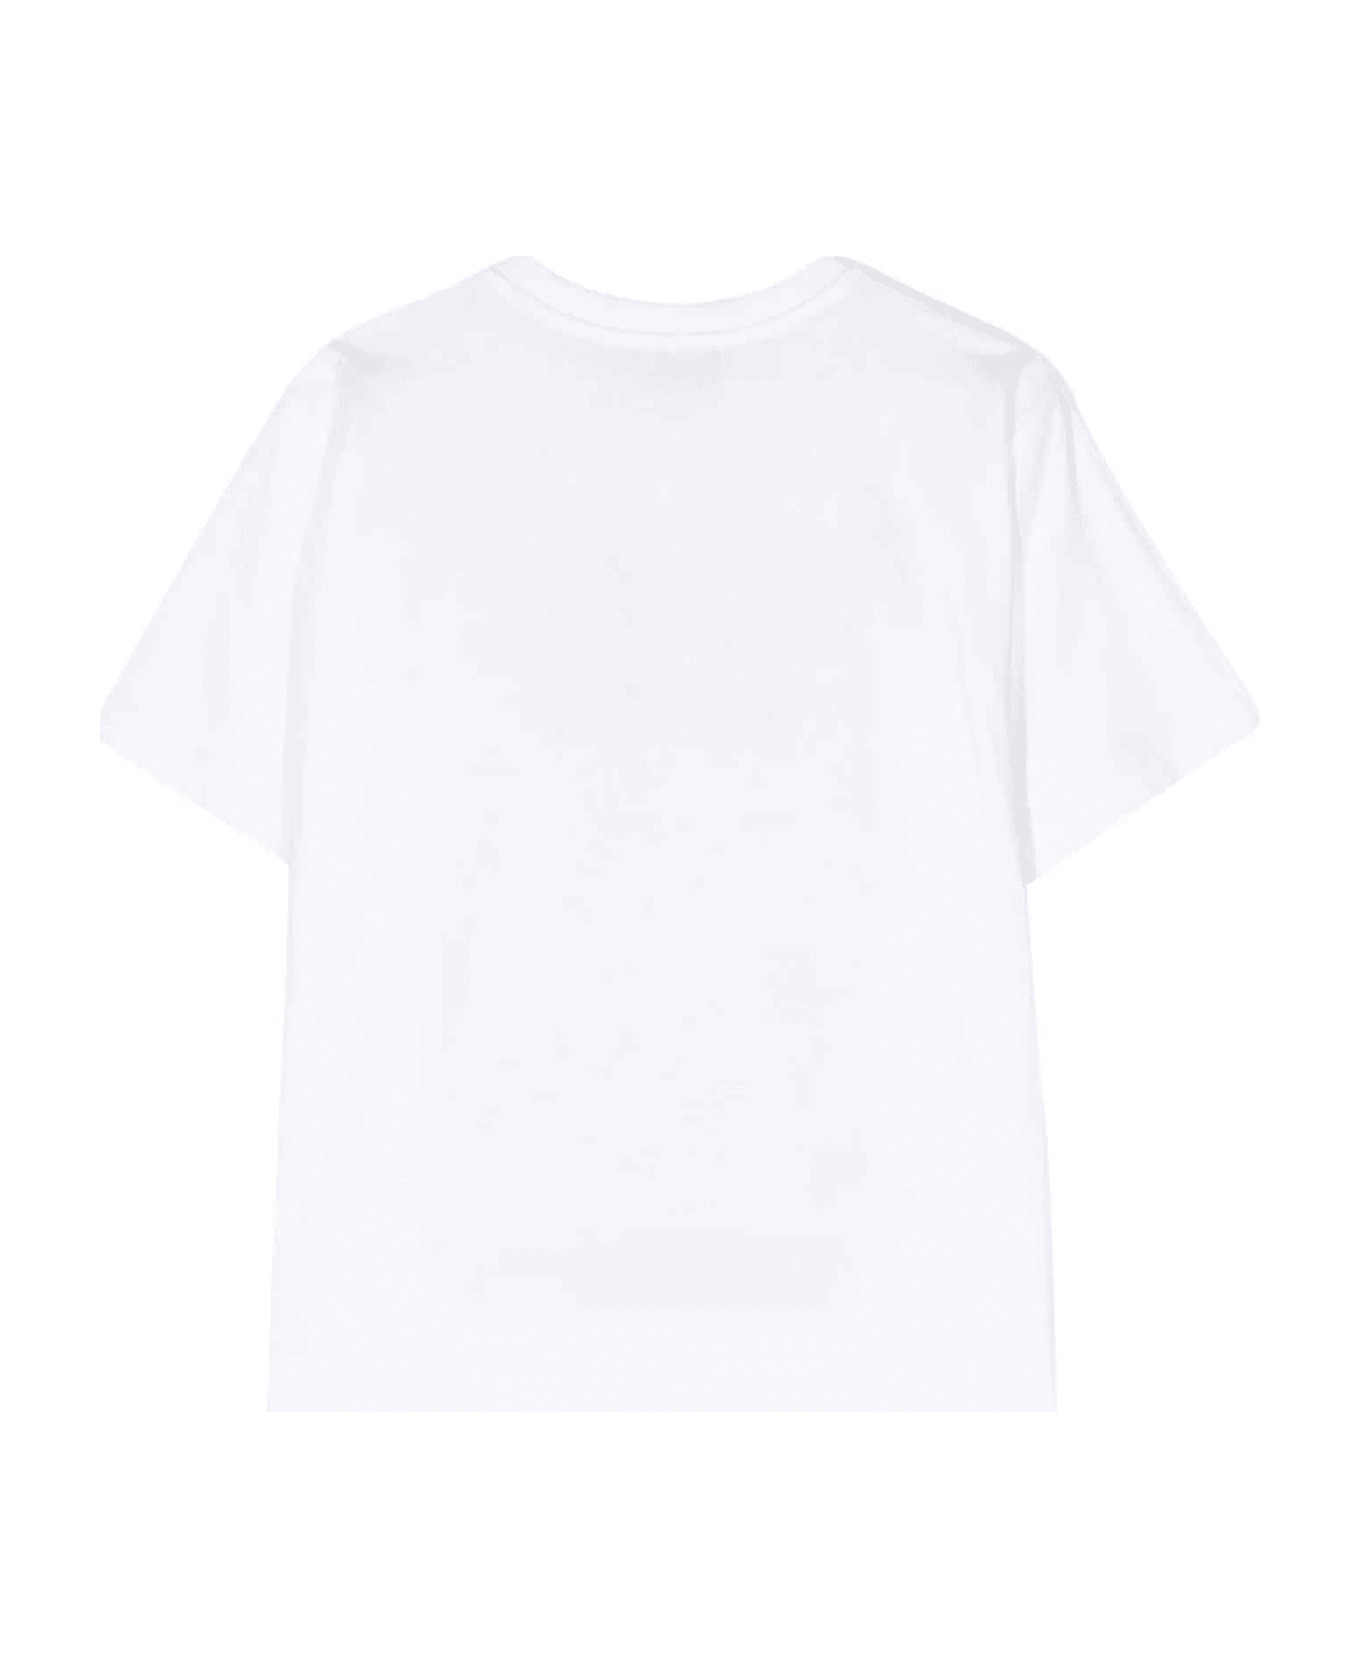 Moschino White T-shirt Unisex - Bianco